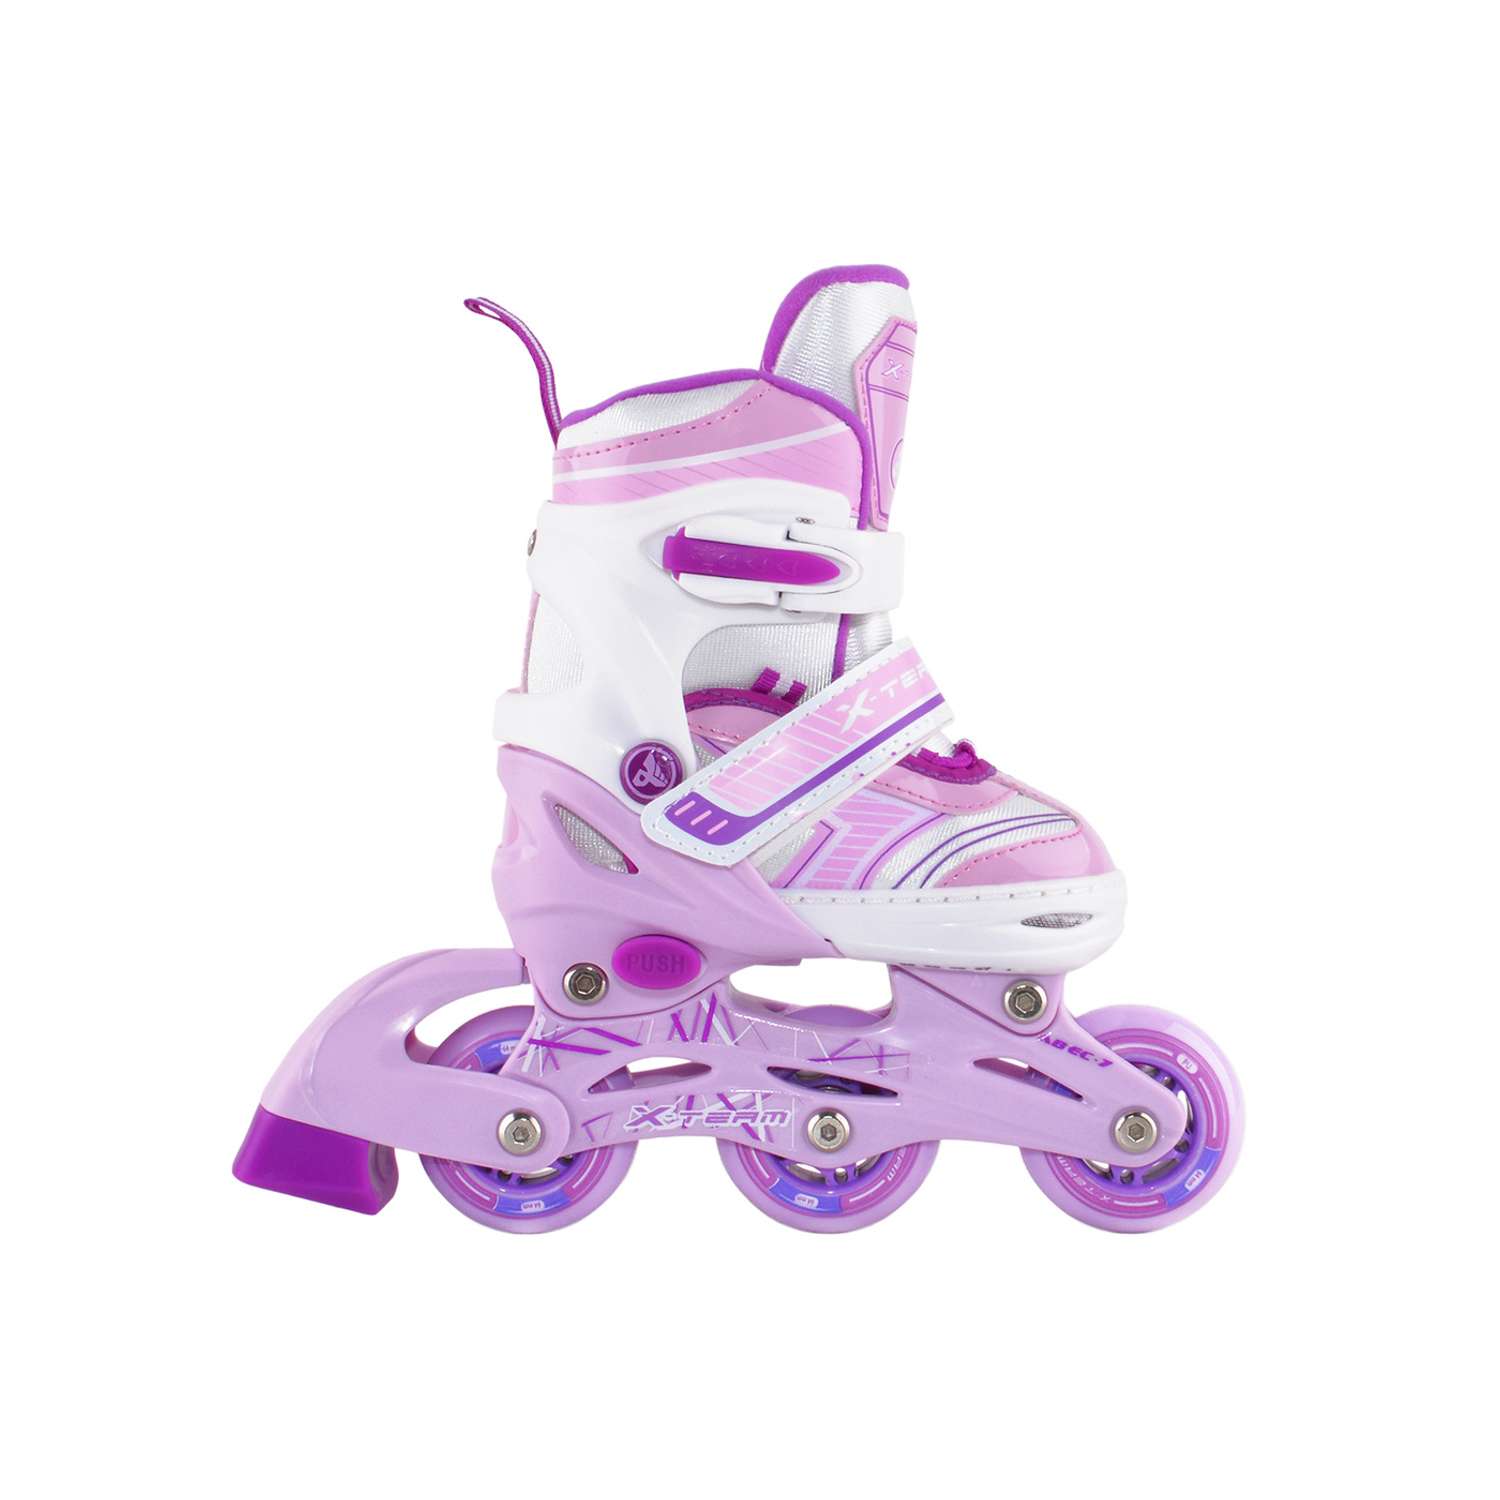 Раздвижные роликовые коньки Alpha Caprice X-Team violet размер XS 27-30 - фото 2